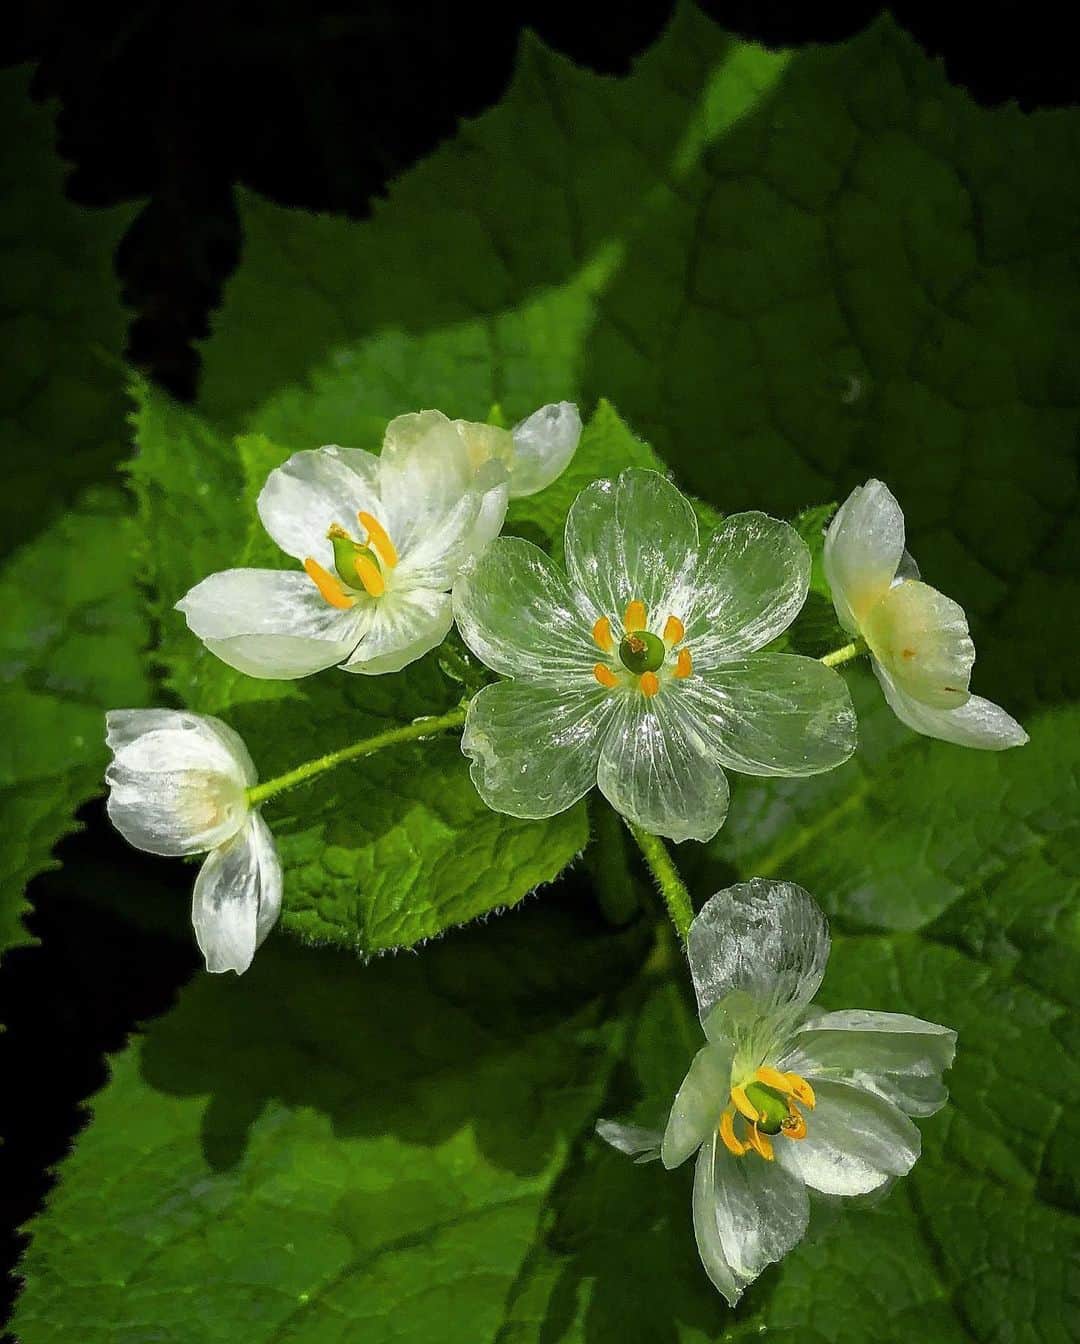 botanist officialのインスタグラム：「雨に濡れると透明になる花 #サンカヨウ 💐 白い花弁が雨や朝露に濡れると透明に変化して見えることから「スケルトンフラワー」とも呼ばれています。  花弁の色の変化には、様々な自然条件を要することや花期がわずか1週間程度という希少性から、その神秘的な姿を一目見ようと多くのハイカーがカメラを片手に群生地を訪れるそうです。  そんな『サンカヨウ』の群生地の一つが、長野県北安曇郡にある #栂池自然園 新潟、富山、長野、岐阜の四県にまたがる中部山岳国立公園内に整備された、日本有数の高層湿原です。 白馬乗鞍岳の火山活動によって生まれた広大な湿原内は、四季折々の高山植物で彩られています。  野草だけでなく標高1,900mからの絶景も楽しめる同園には、遊歩道が整備されており、散策にもうってつけです。 高山ならではの冷涼な気候下に広がる大自然を満喫しに、ぜひ一度足を運んでみてはいかがでしょうか♪  Thank you!：@sasa.oz3   ✔︎ 当アカウントでは、植物と共に生きる「ボタニカルライフスタイル」を豊かにするため、四季折々の自然の景色や、植物の魅力が溢れるボタニカルスポットを紹介しています。  ✔︎ 植物がもたらす美しい景色のお写真に #絶景ボタニカル を付けて投稿していただくと、当アカウントでご紹介させていただくことがございます。  #絶景ボタニカル #BOTANIST #ボタニスト #botanicalbeauty」